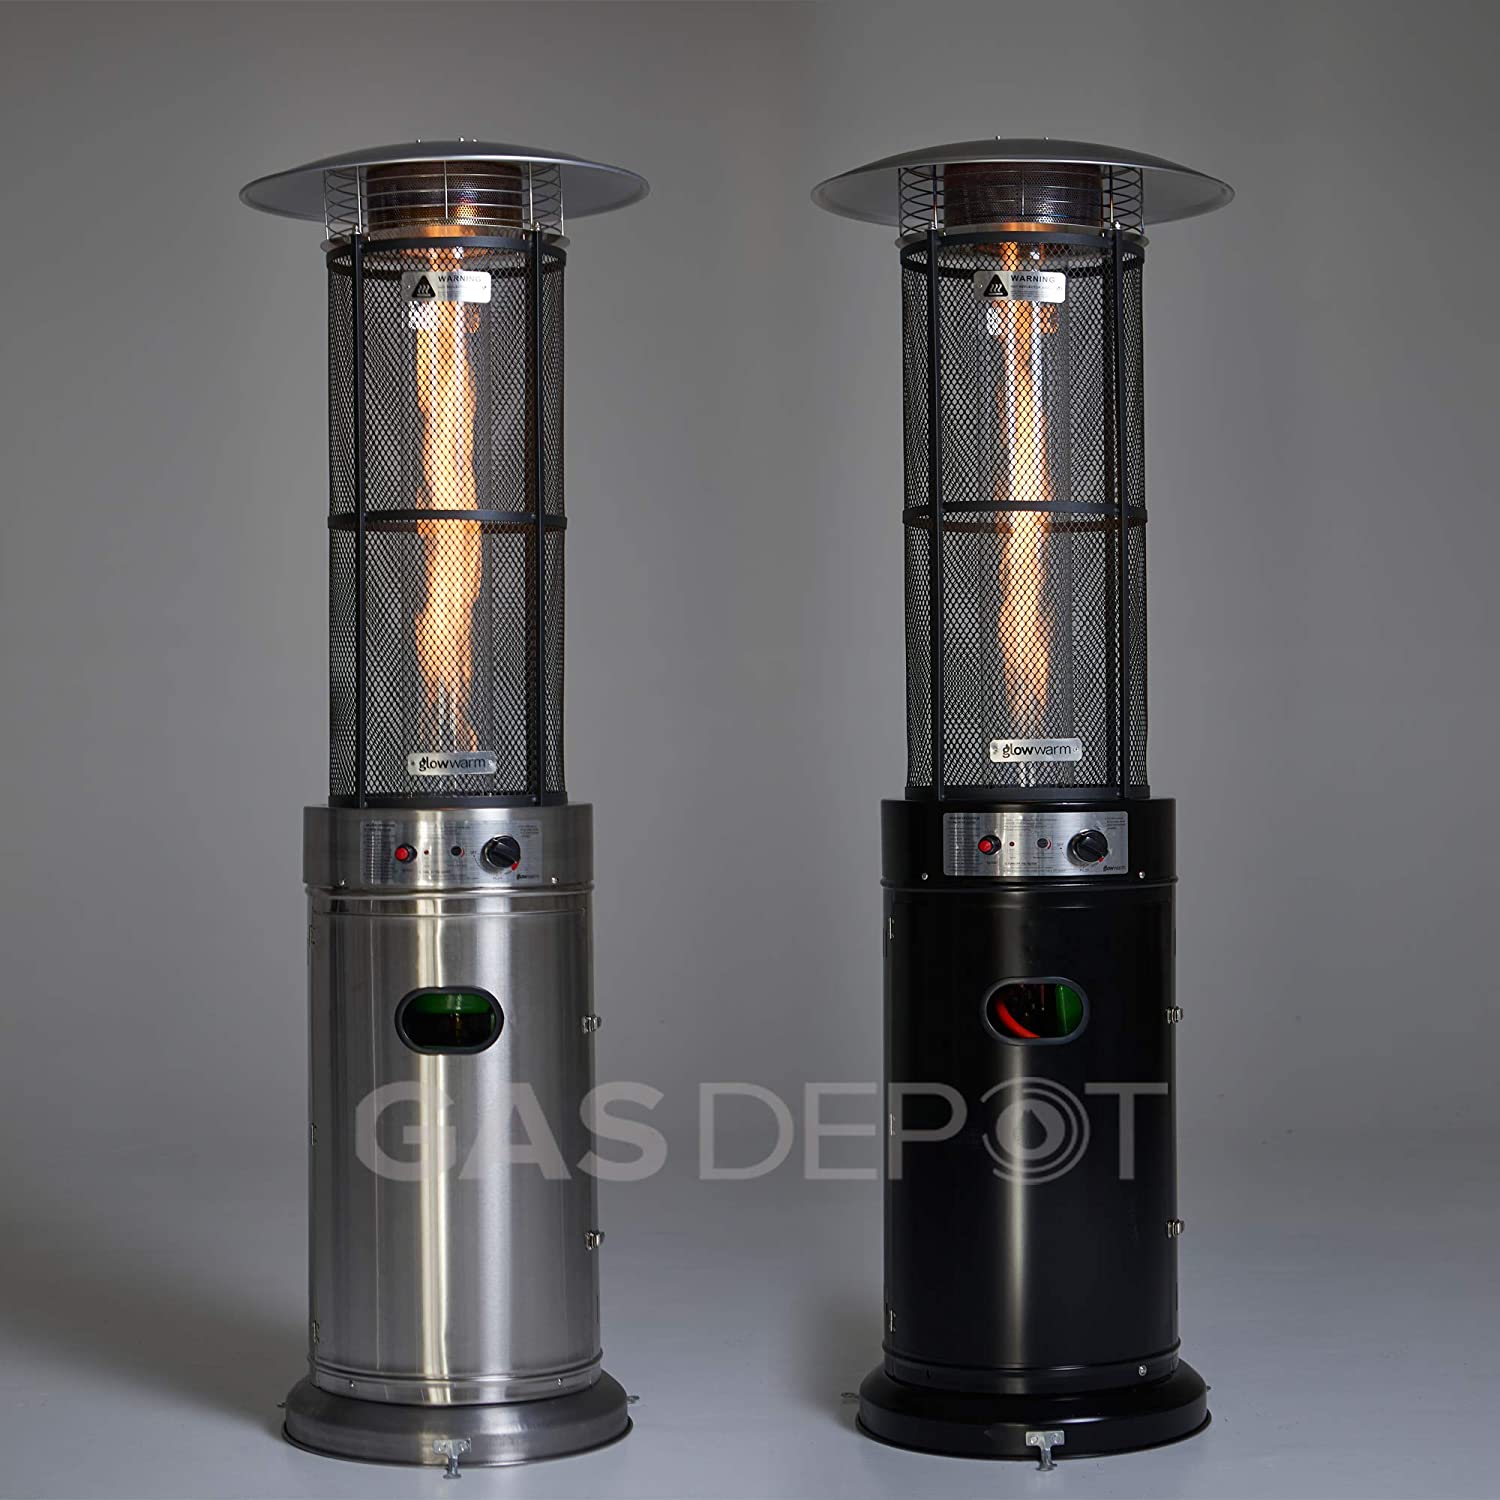 Calentador de patio de llama Real Glow de 15 KW con tubo de vidrio